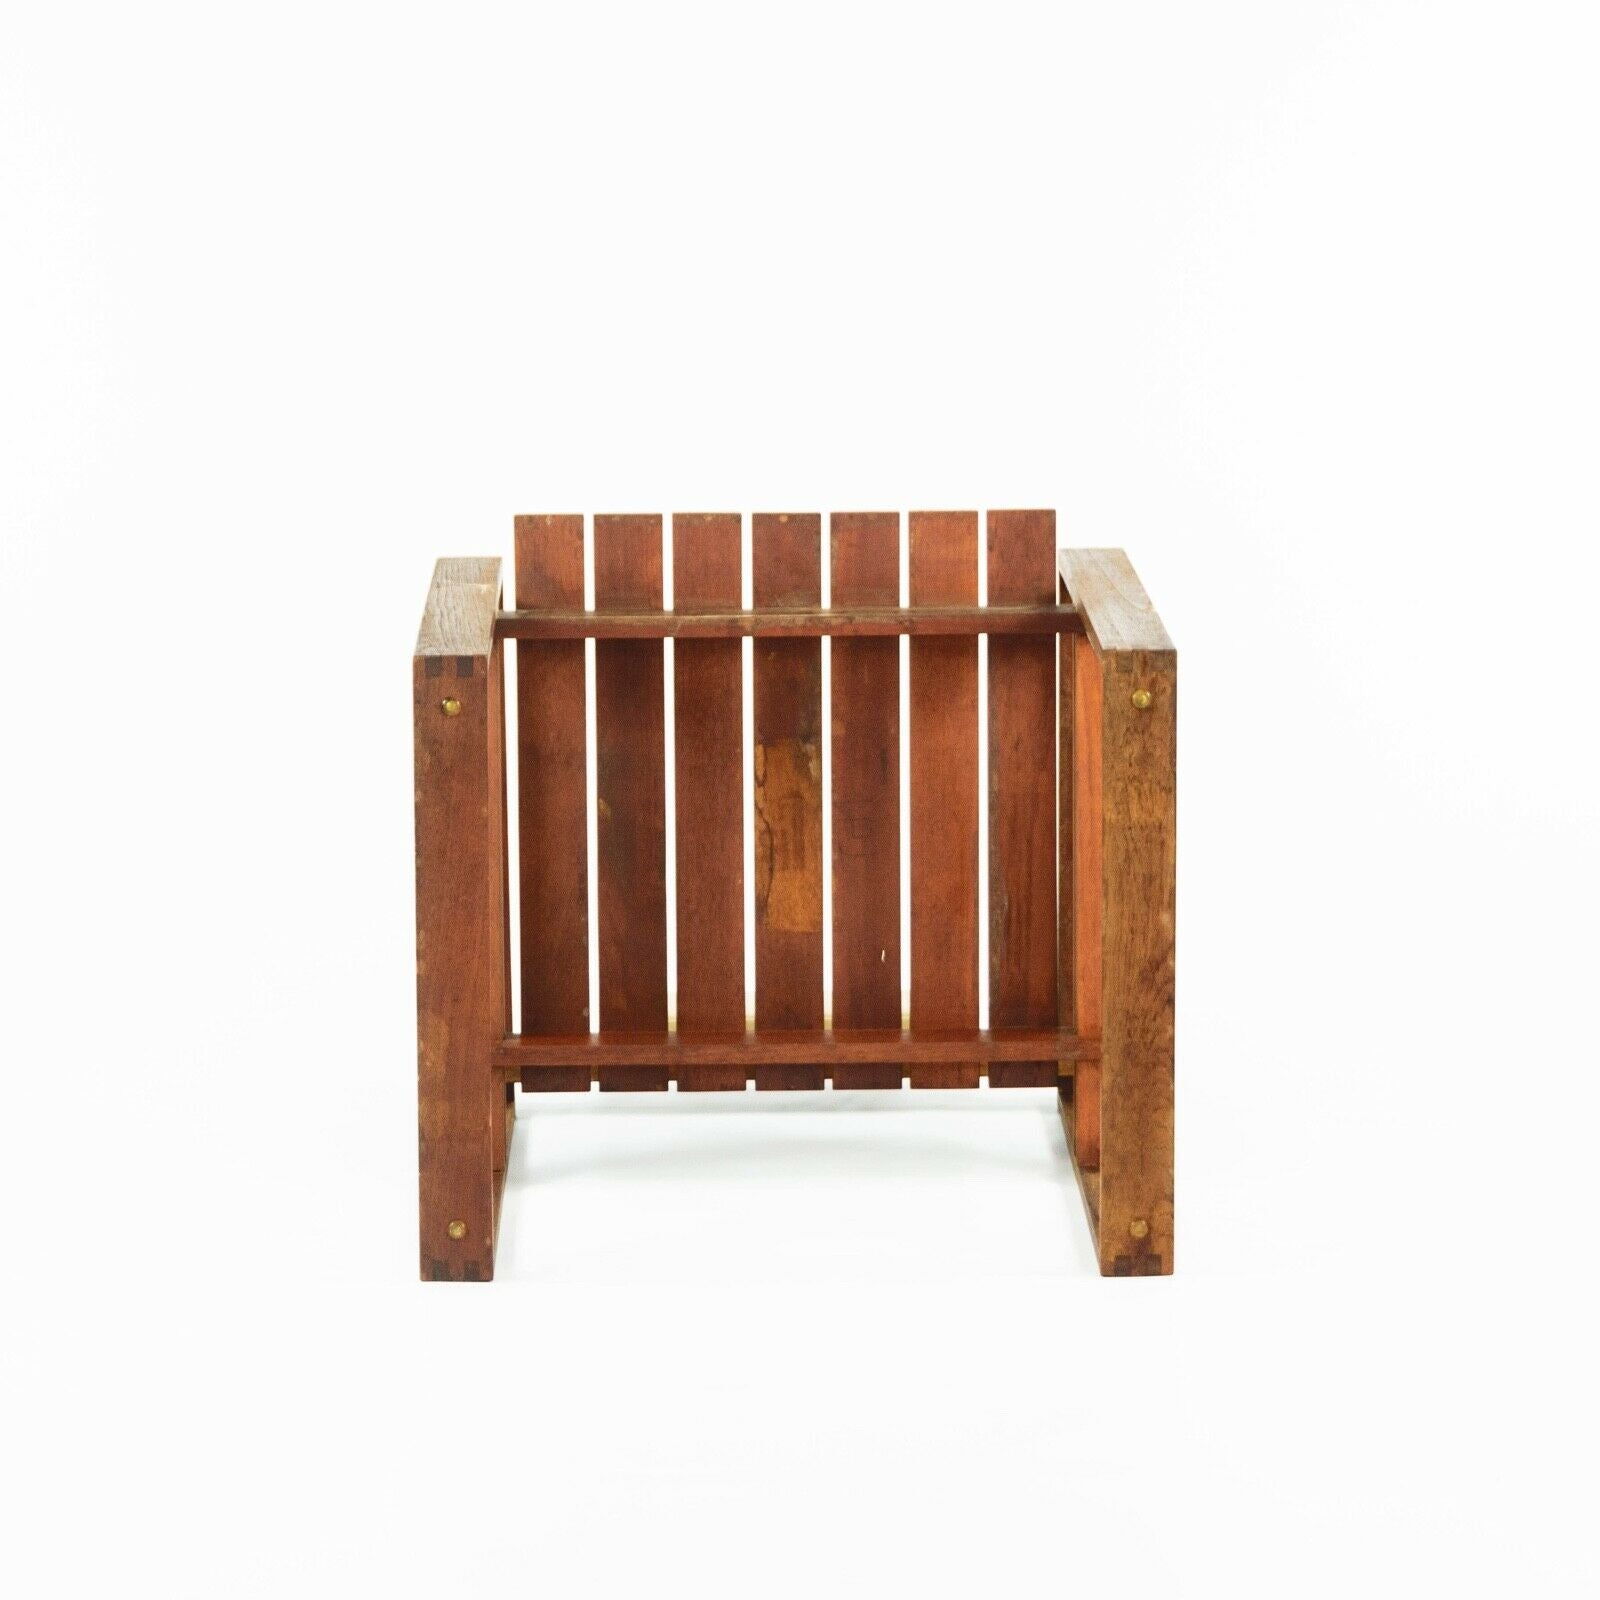 SOLD 1975 Bodil Kjaer Teak Slat Seat Dining / Side Chair by CI Designs of Boston